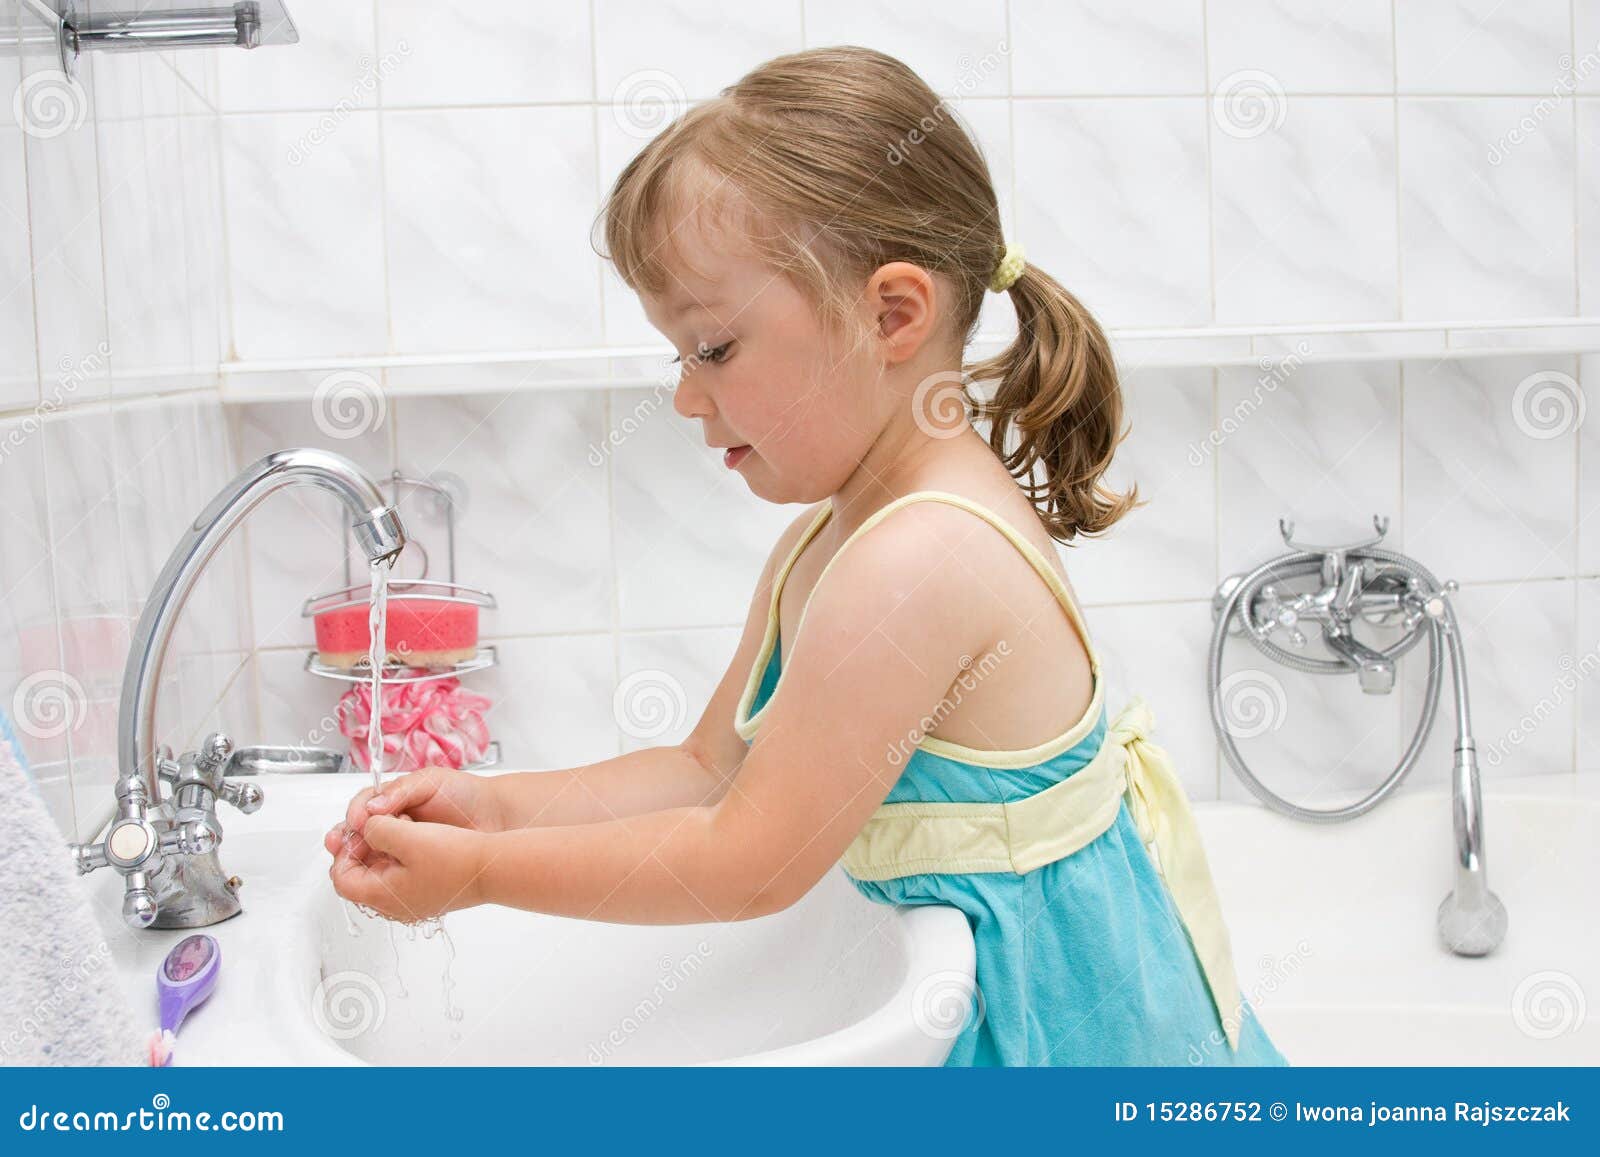 Гигиена детей 2 3 лет. Ребенок умывается. Умывание ребенка. Девочка умывается. Умывание дошкольников.